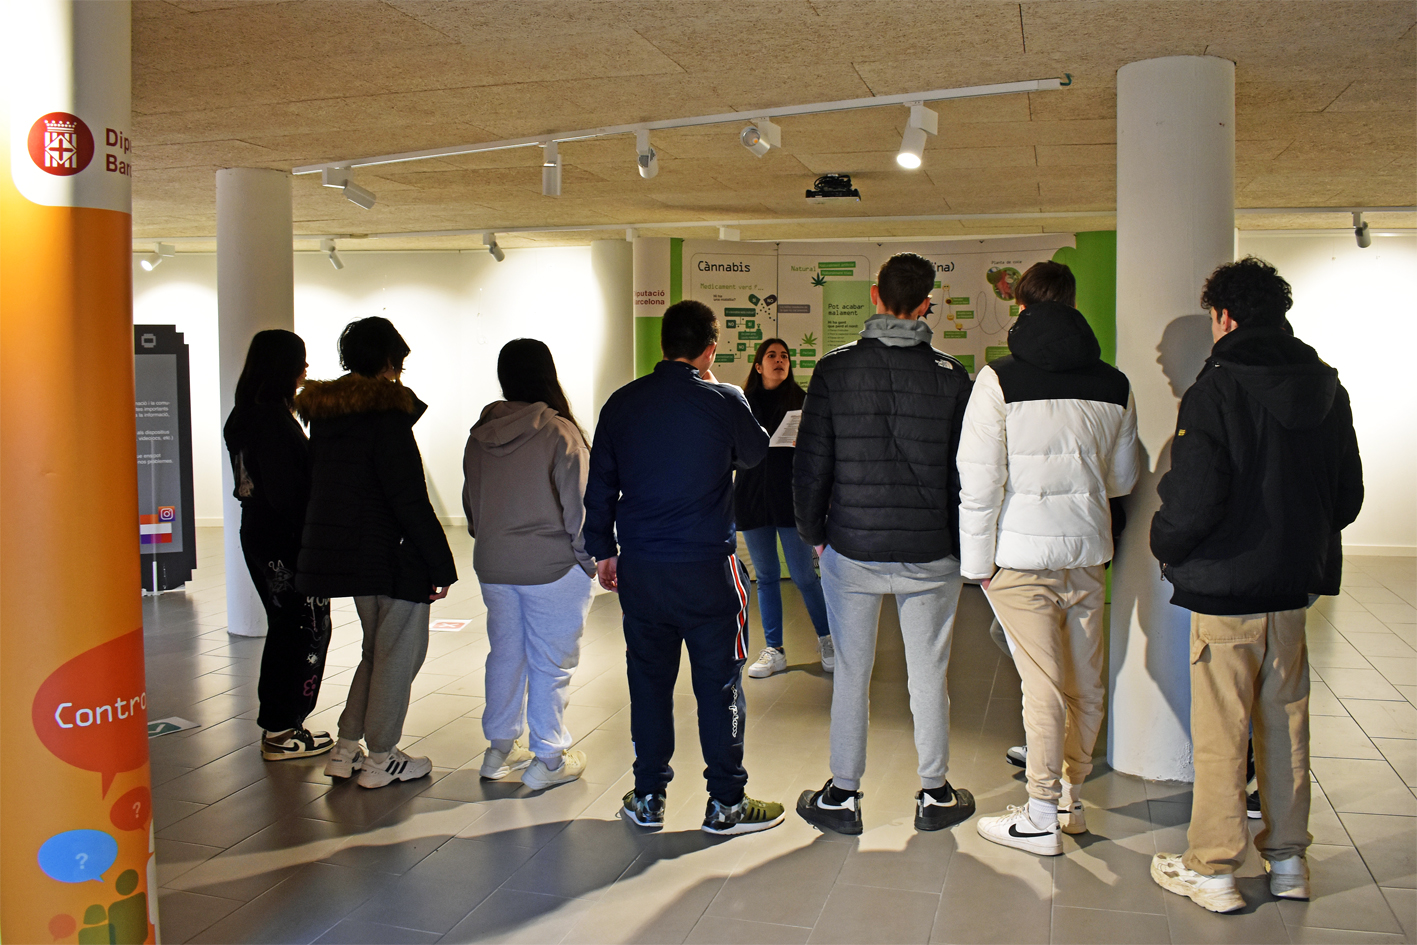 Activitat interactiva de l'exposició 'Controles?' sobre els riscos de les drogues i la prevenció del consum, organitzada per la Diputació de Barcelona i l'Ajuntament de Súria, a Cal Balaguer del Porxo.